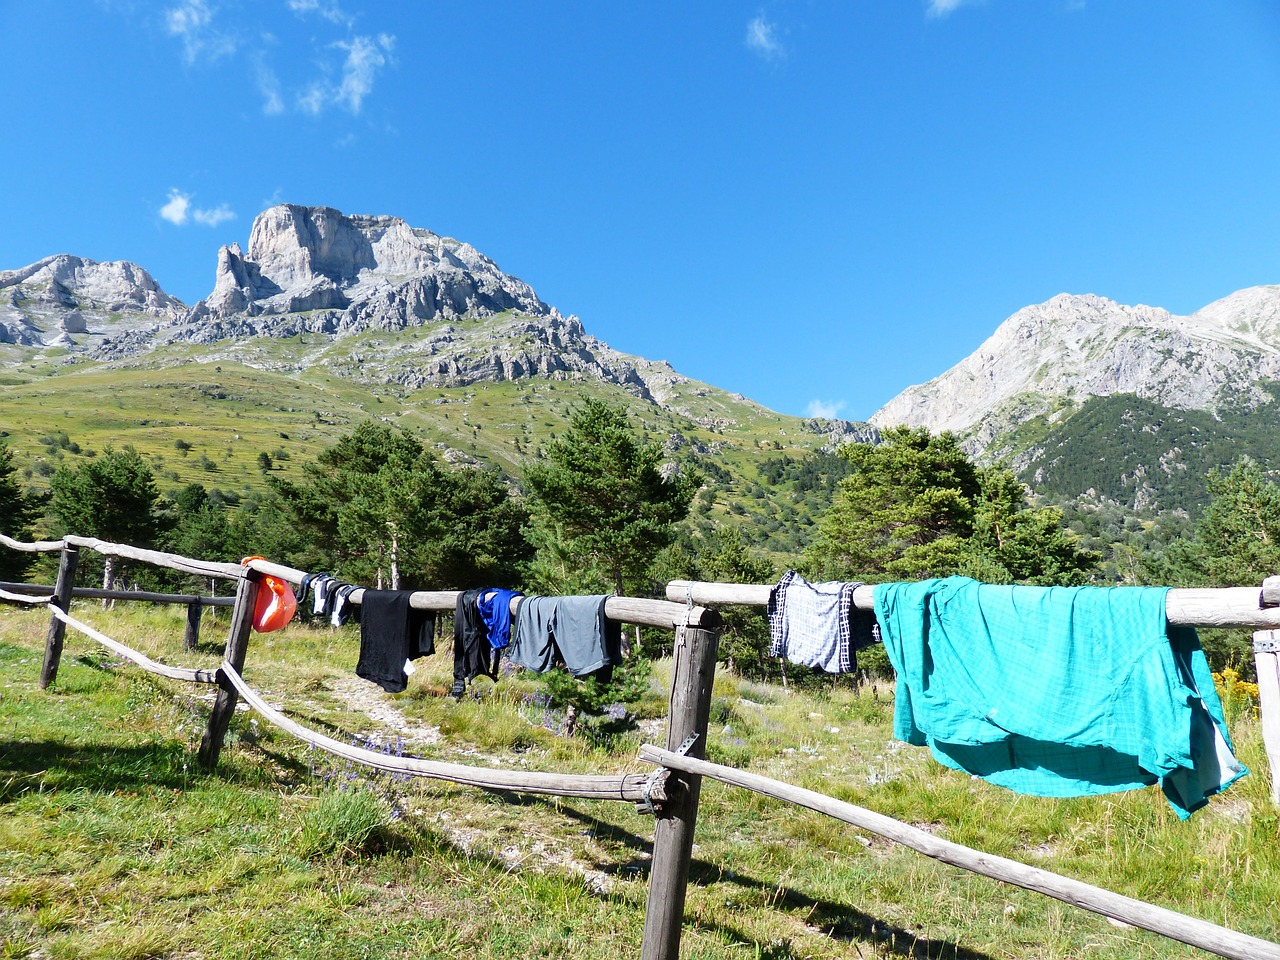 laundry dry clothing free photo